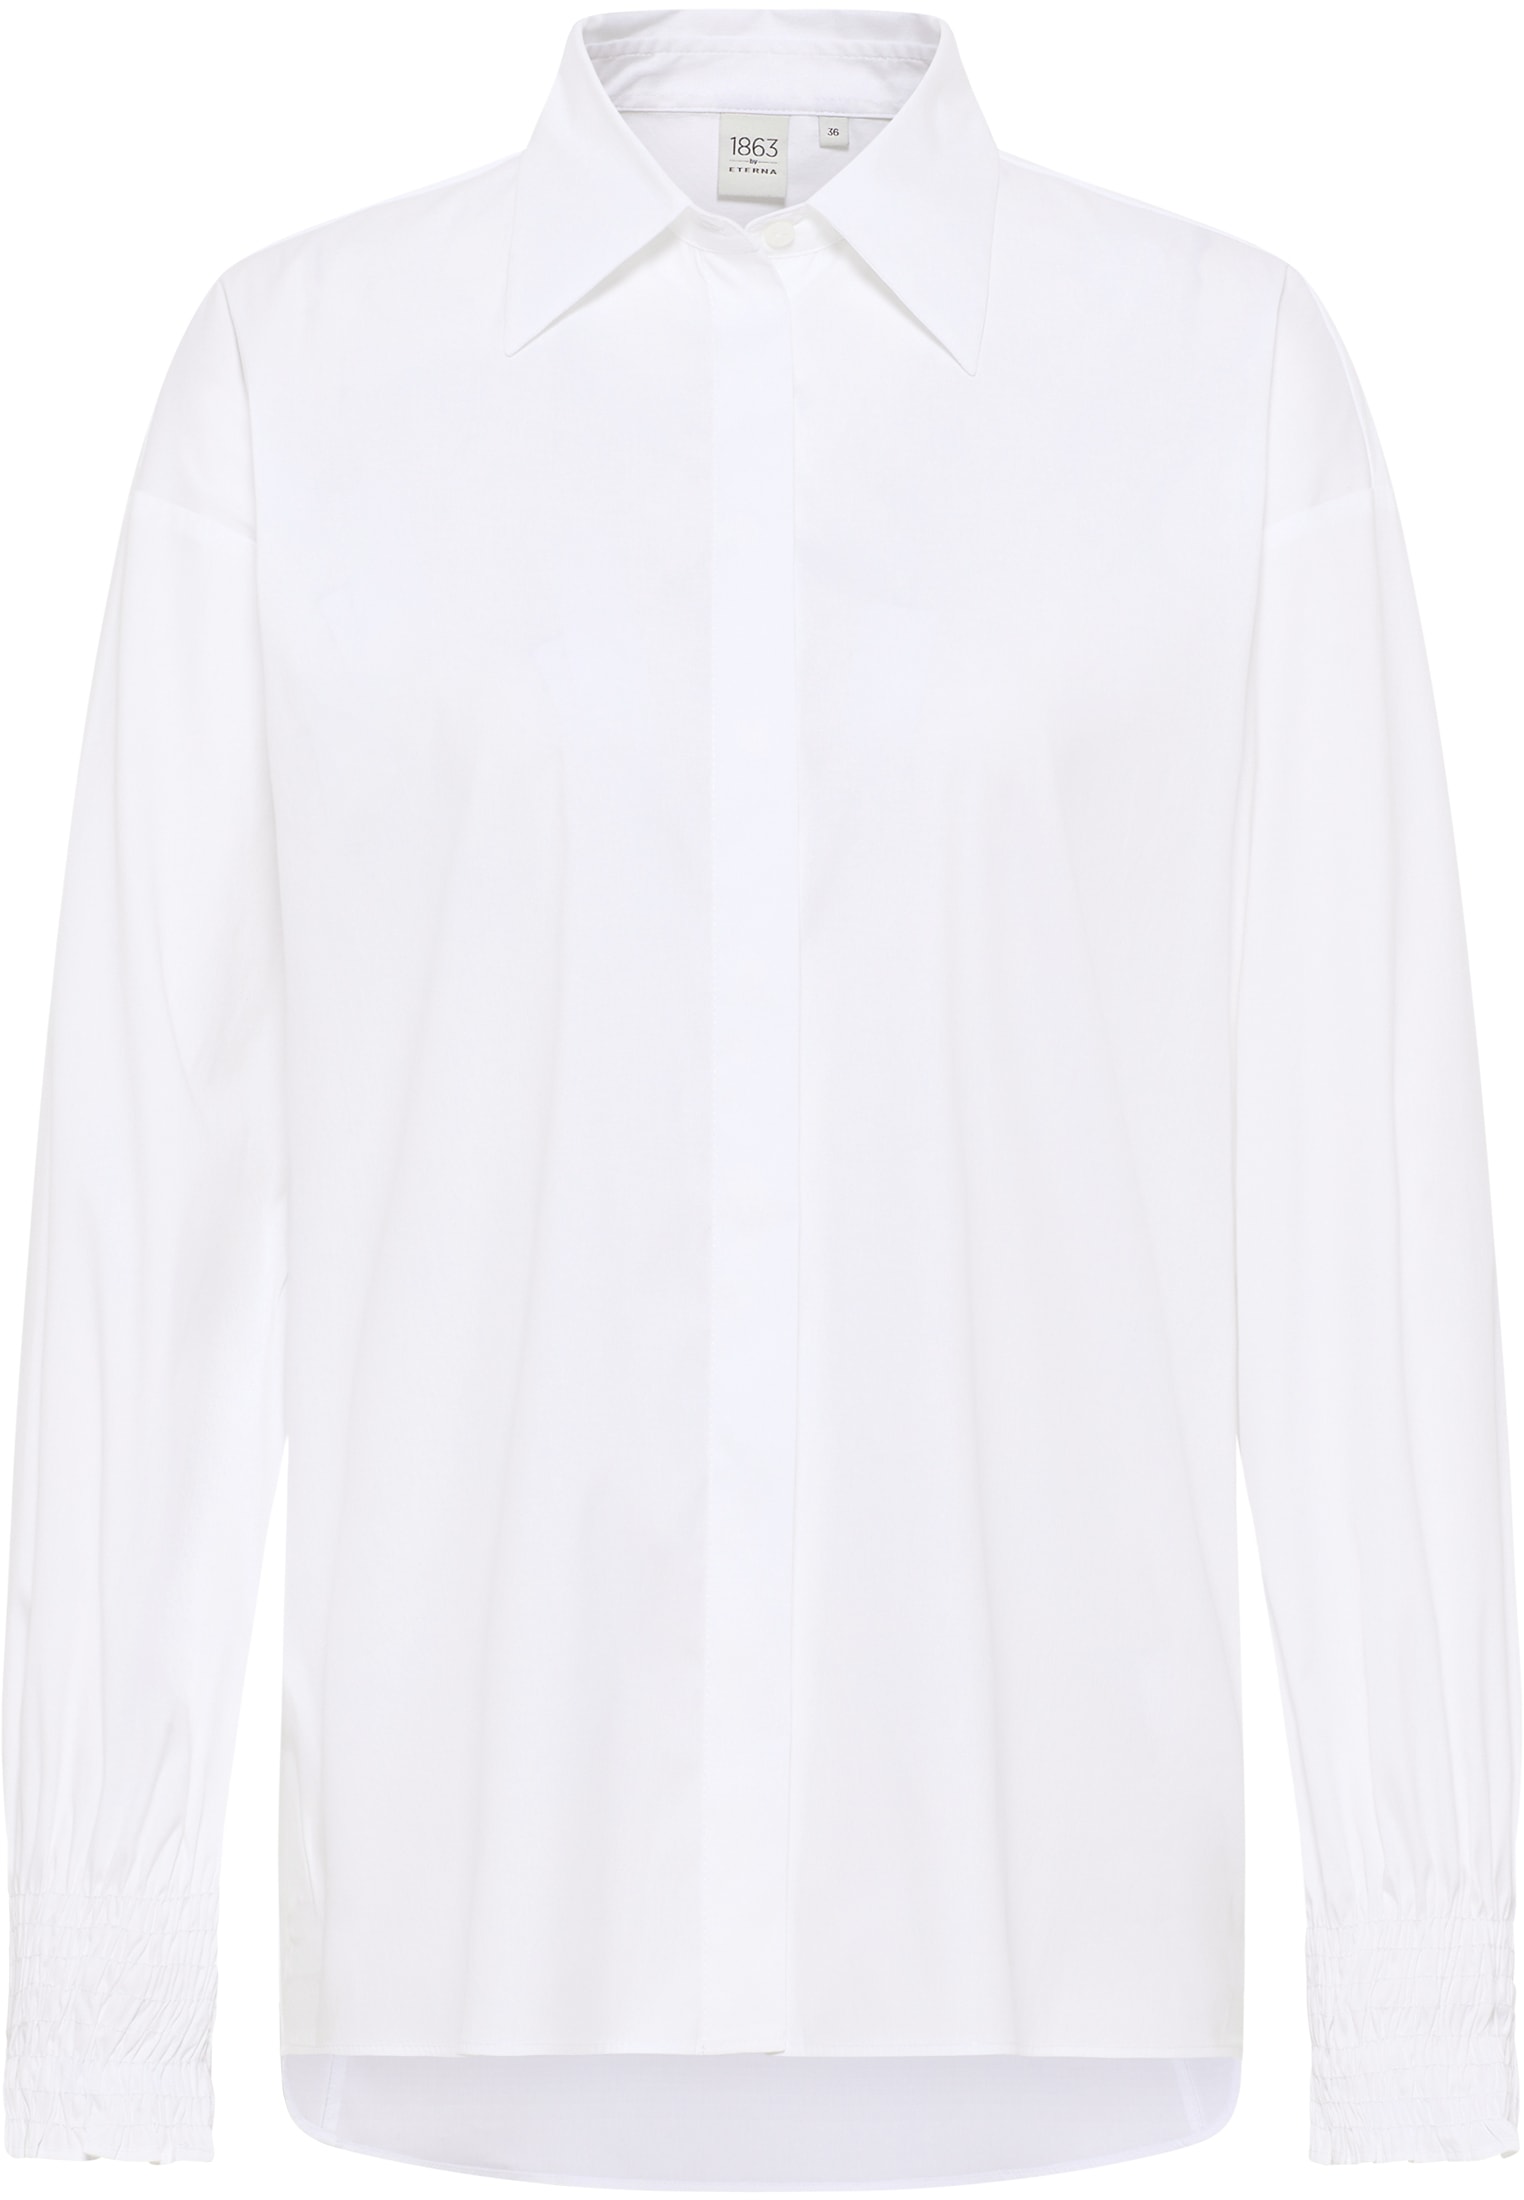 Signature Shirt Bluse in weiß unifarben weiß 46 Langarm 2BL04347-00-01-46-1/1 | | | 